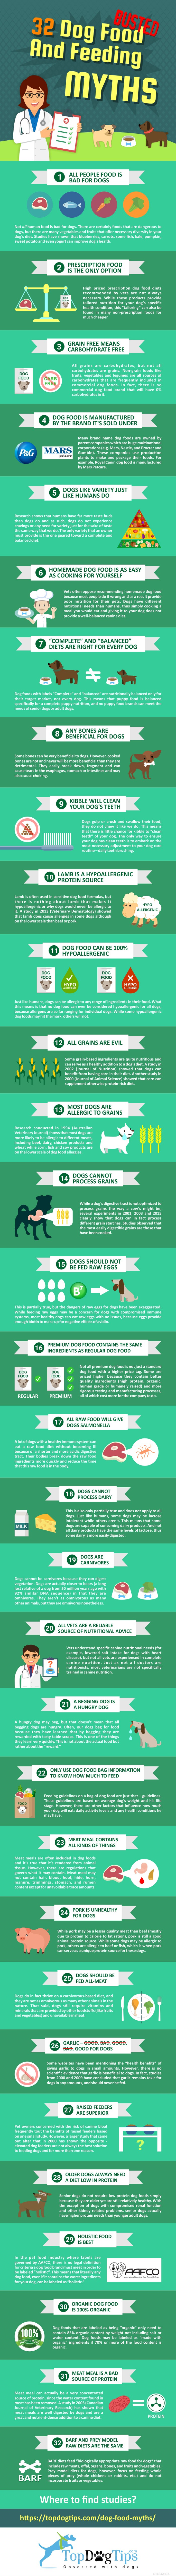 31 mitos sobre comida de cachorro e alimentação desmascarados [Infográfico]